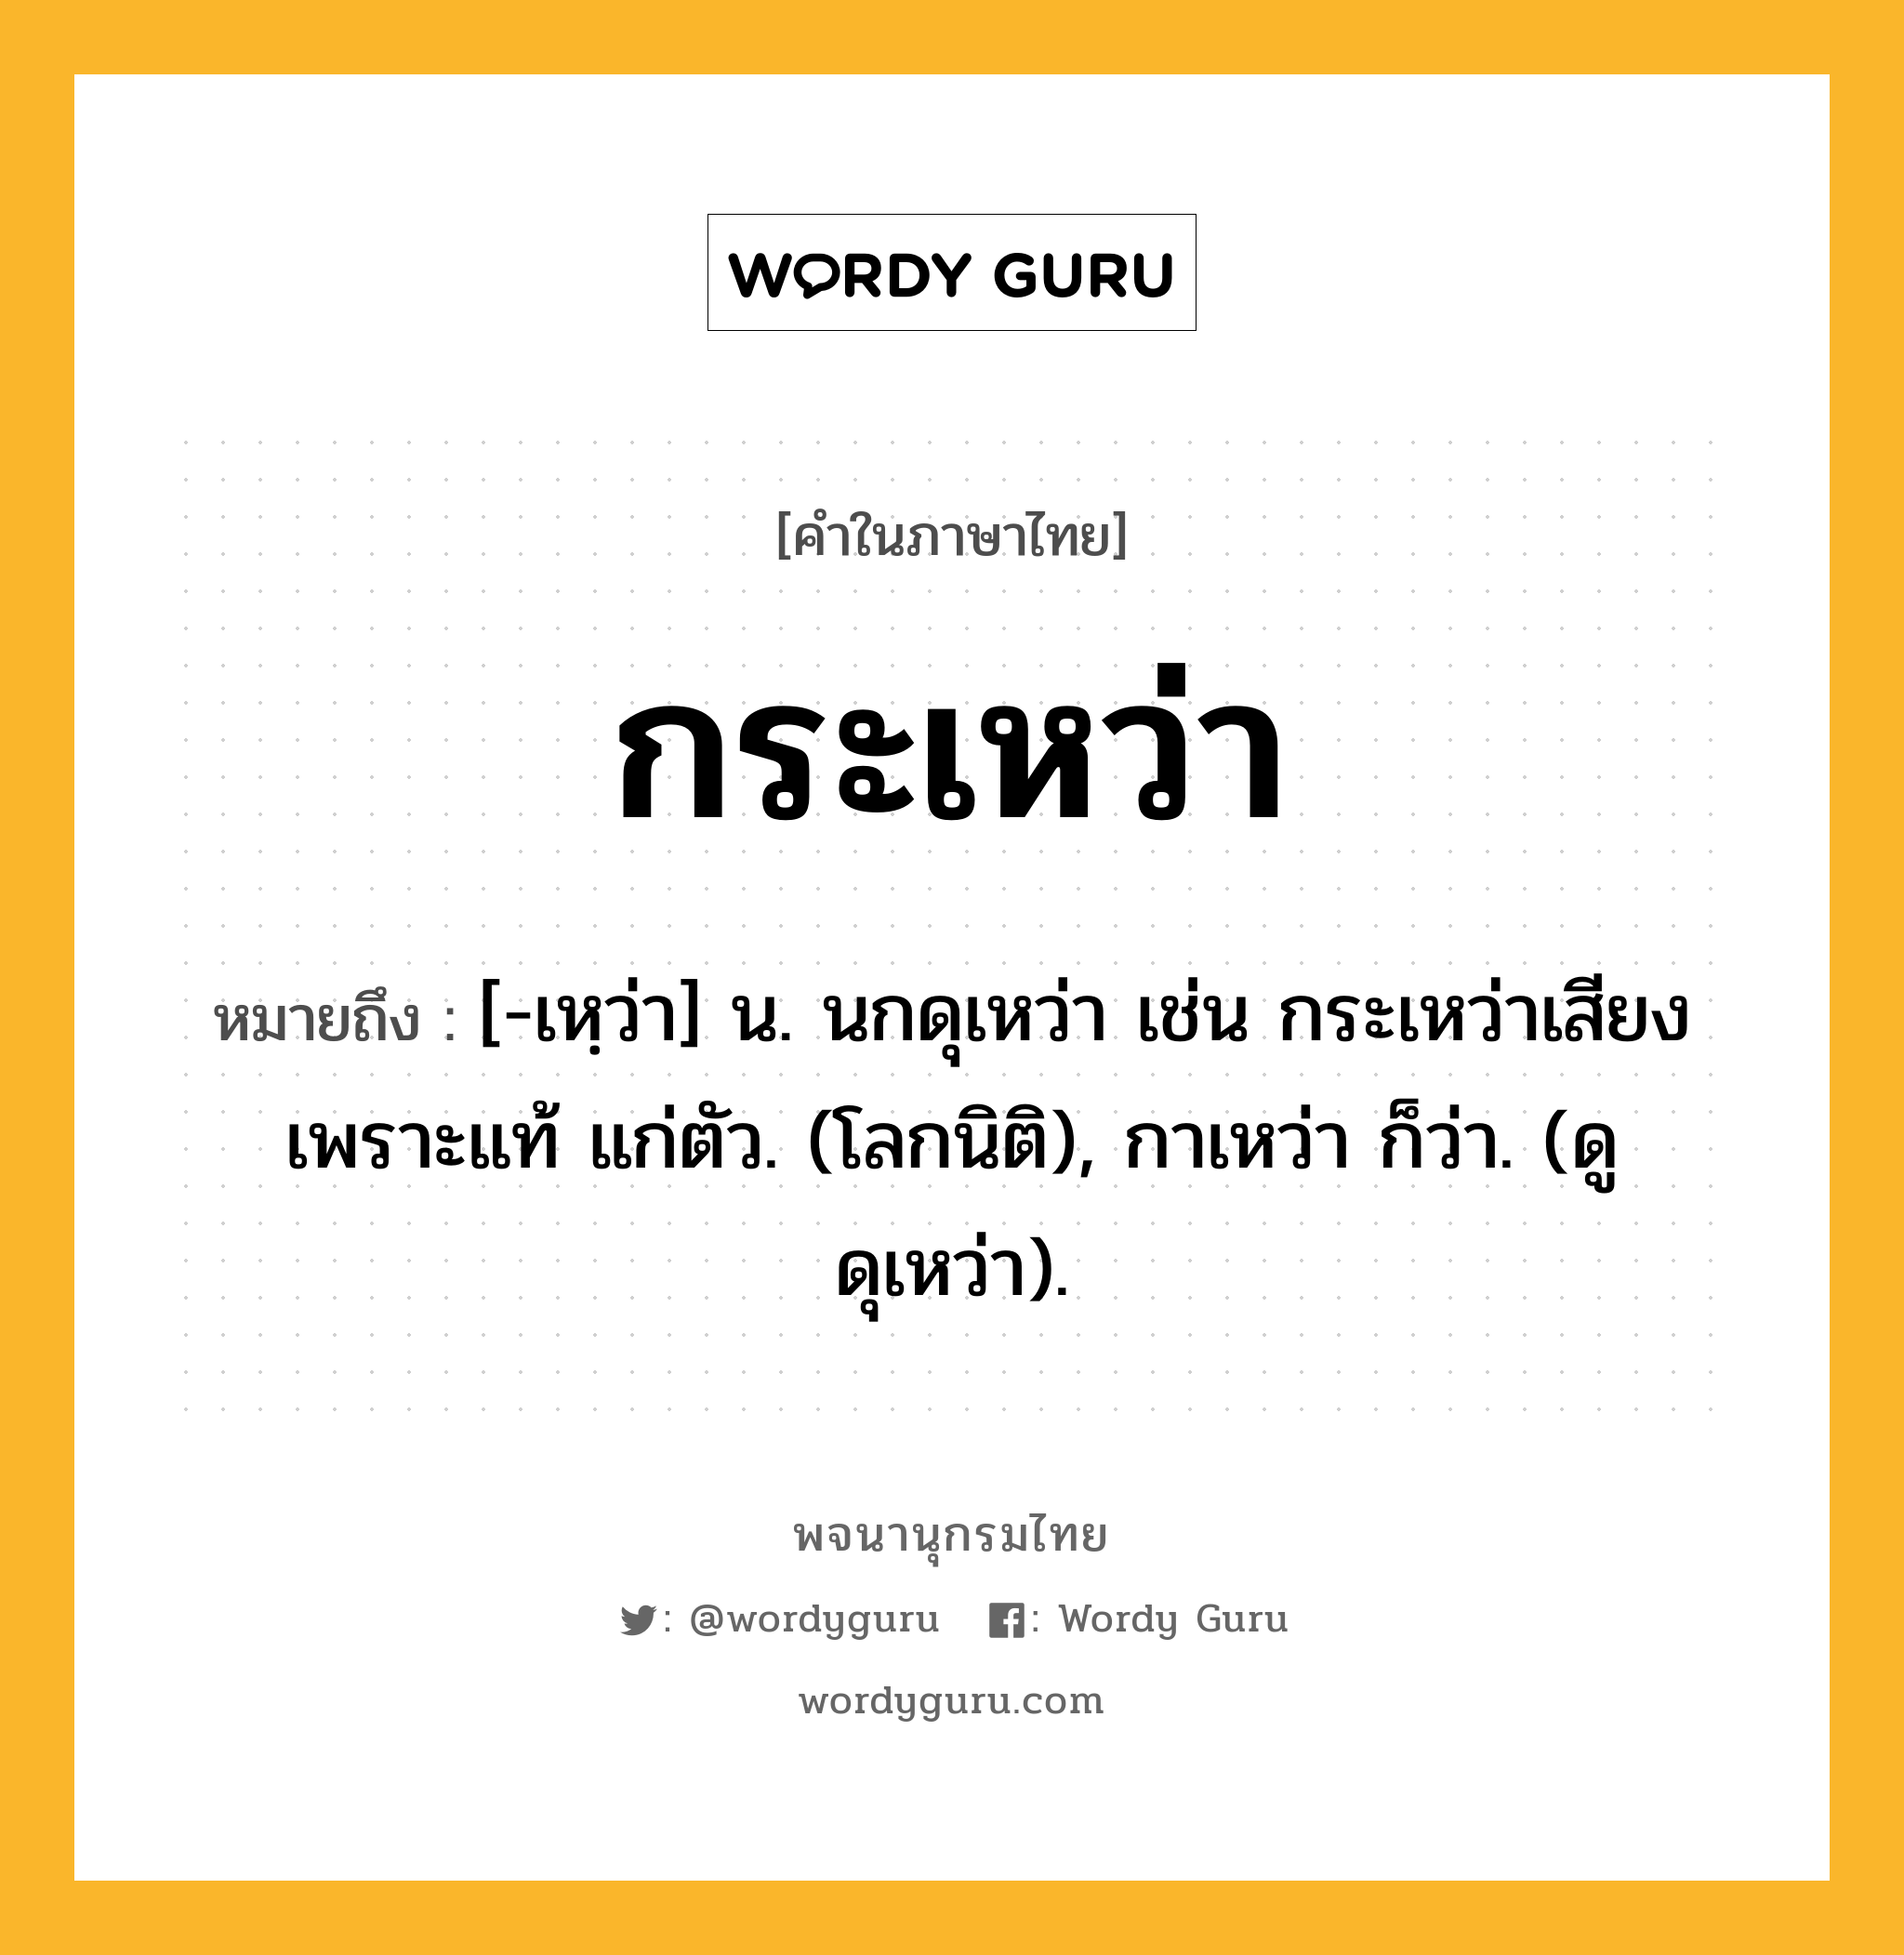 กระเหว่า หมายถึงอะไร?, คำในภาษาไทย กระเหว่า หมายถึง [-เหฺว่า] น. นกดุเหว่า เช่น กระเหว่าเสียงเพราะแท้ แก่ตัว. (โลกนิติ), กาเหว่า ก็ว่า. (ดู ดุเหว่า).